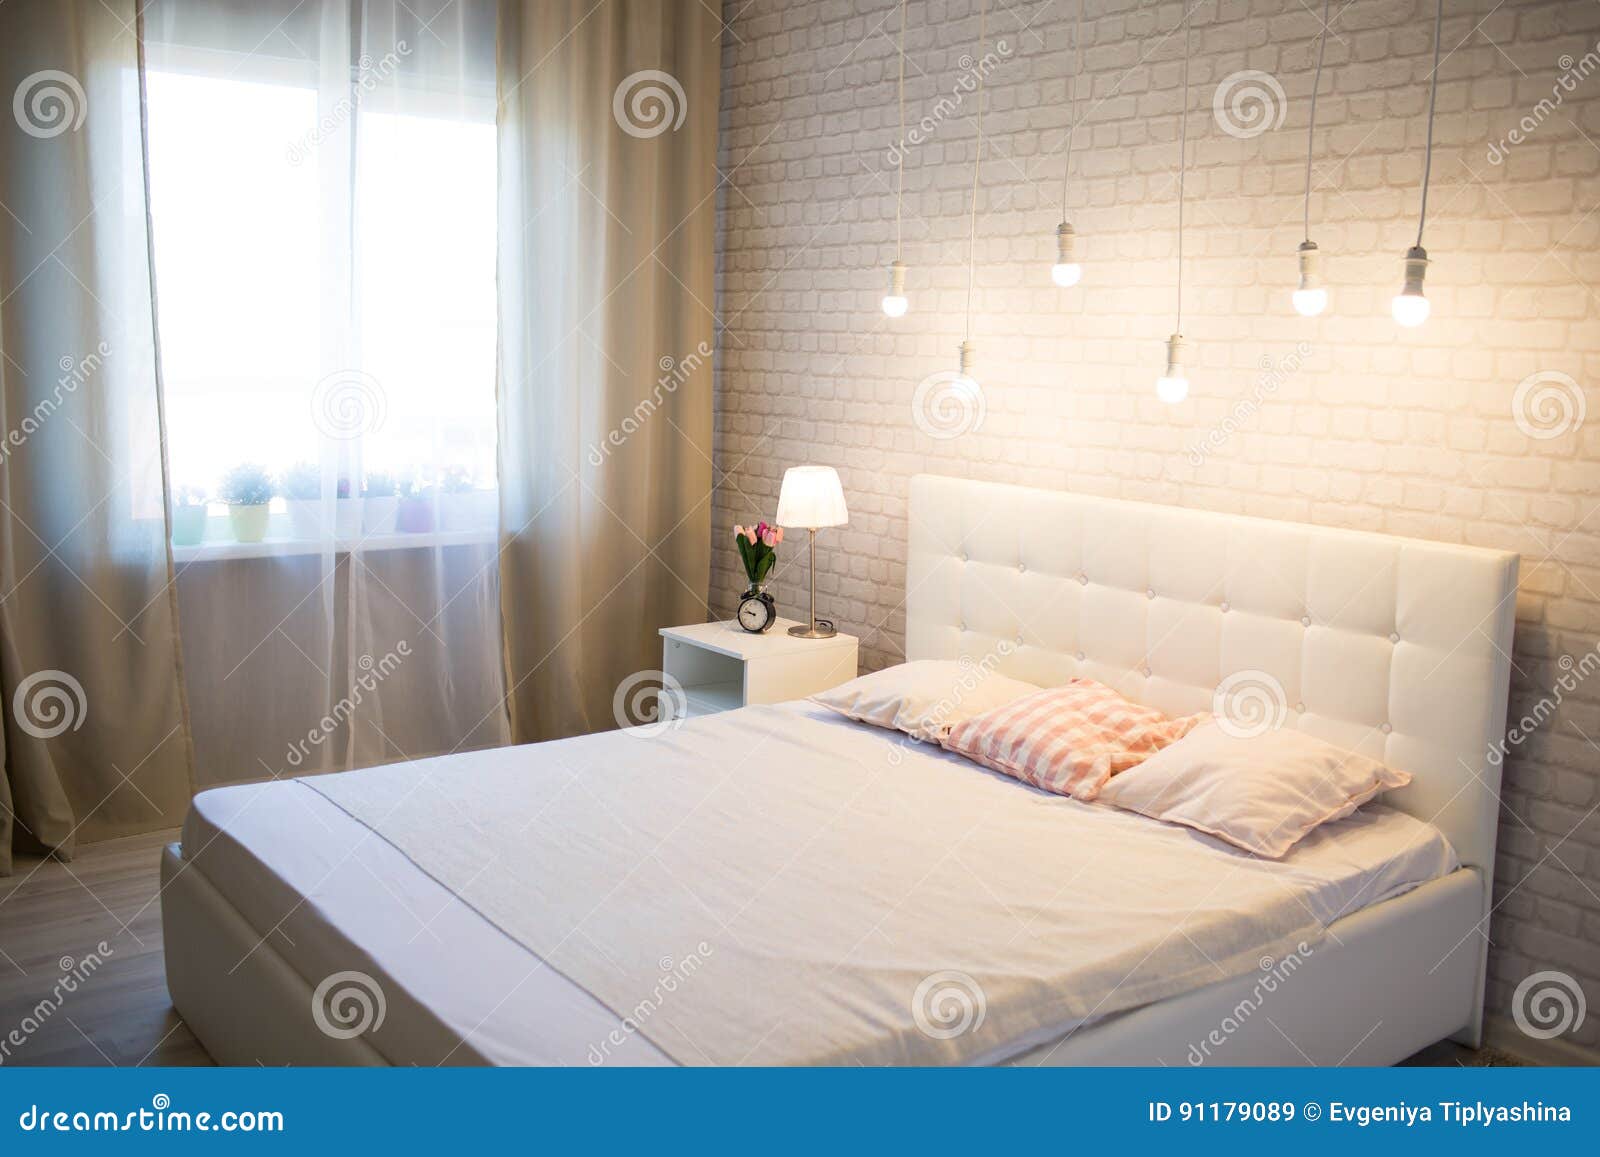 Кровать В Интерьере Спальни Фото